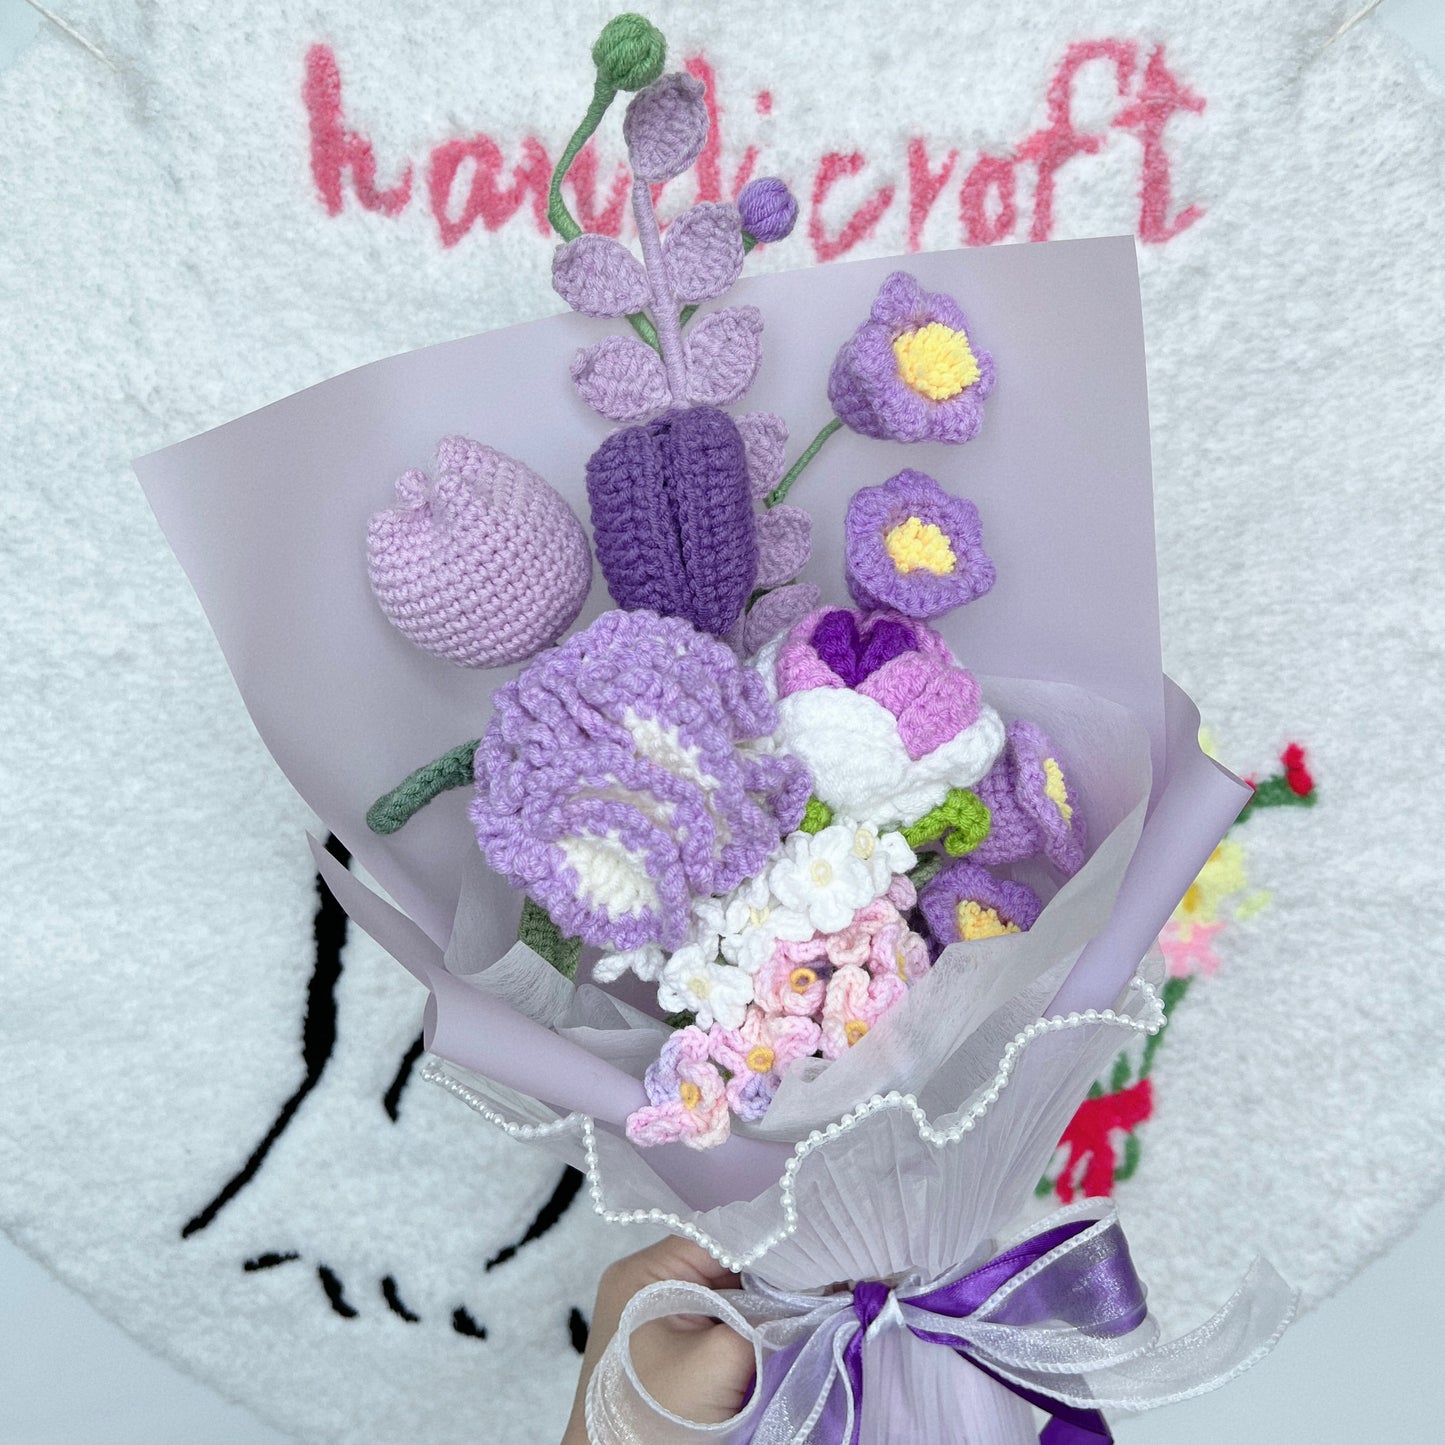 grape glow - purple crochet flower bouquet ₊˚ʚ ᗢ₊˚✧ ﾟ.🍇